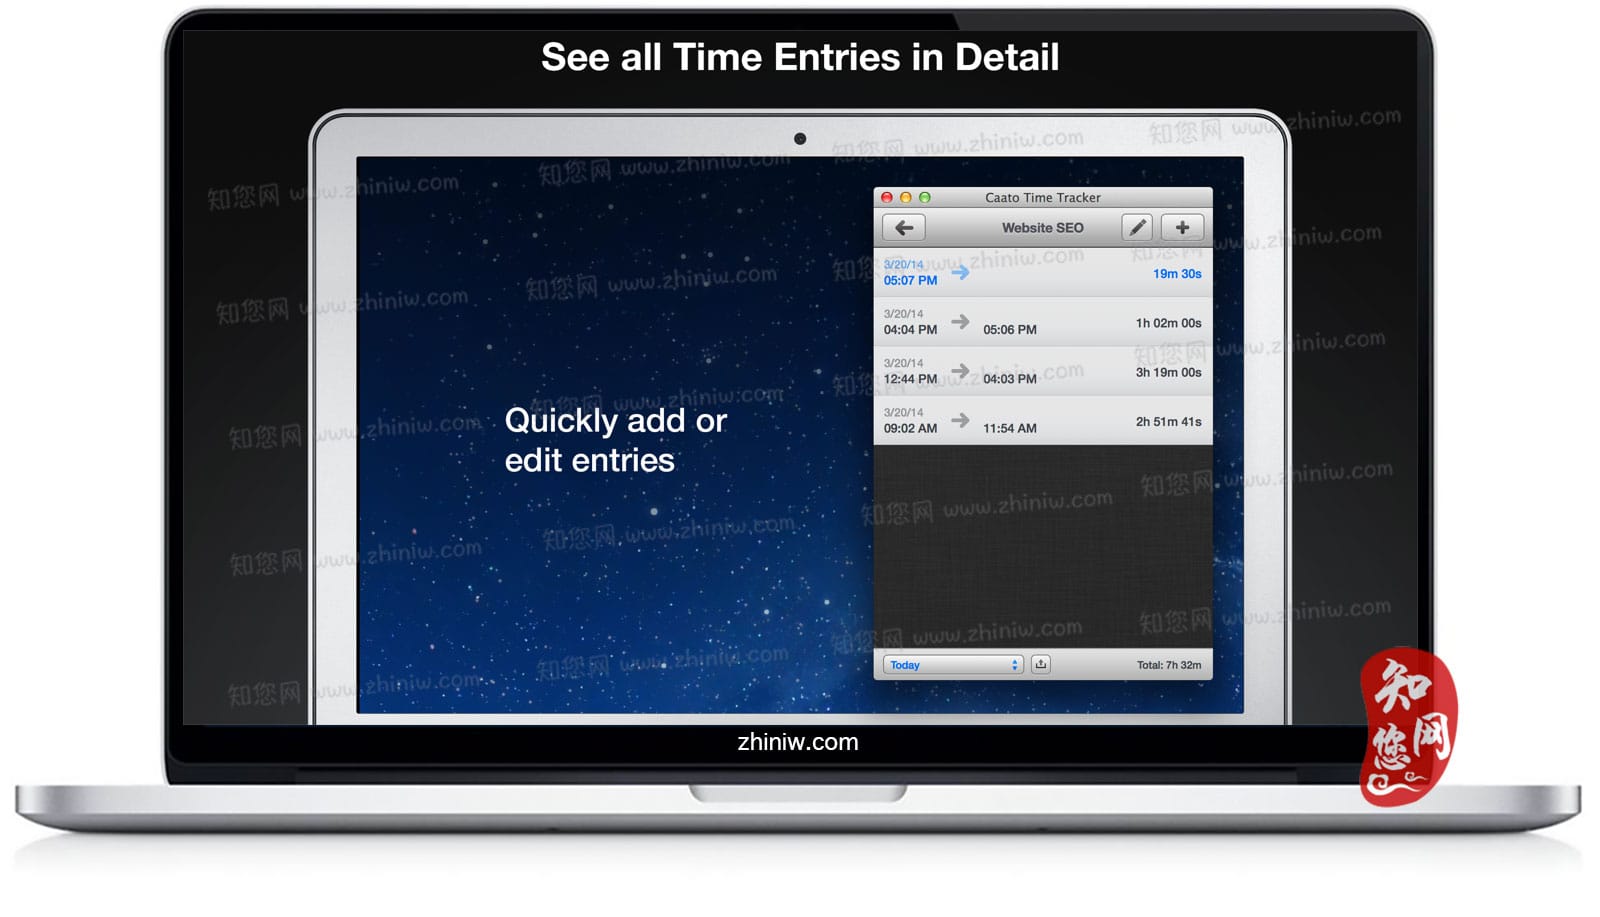 Caato Time Tracker Pro Mac软件下载免费尽在知您网